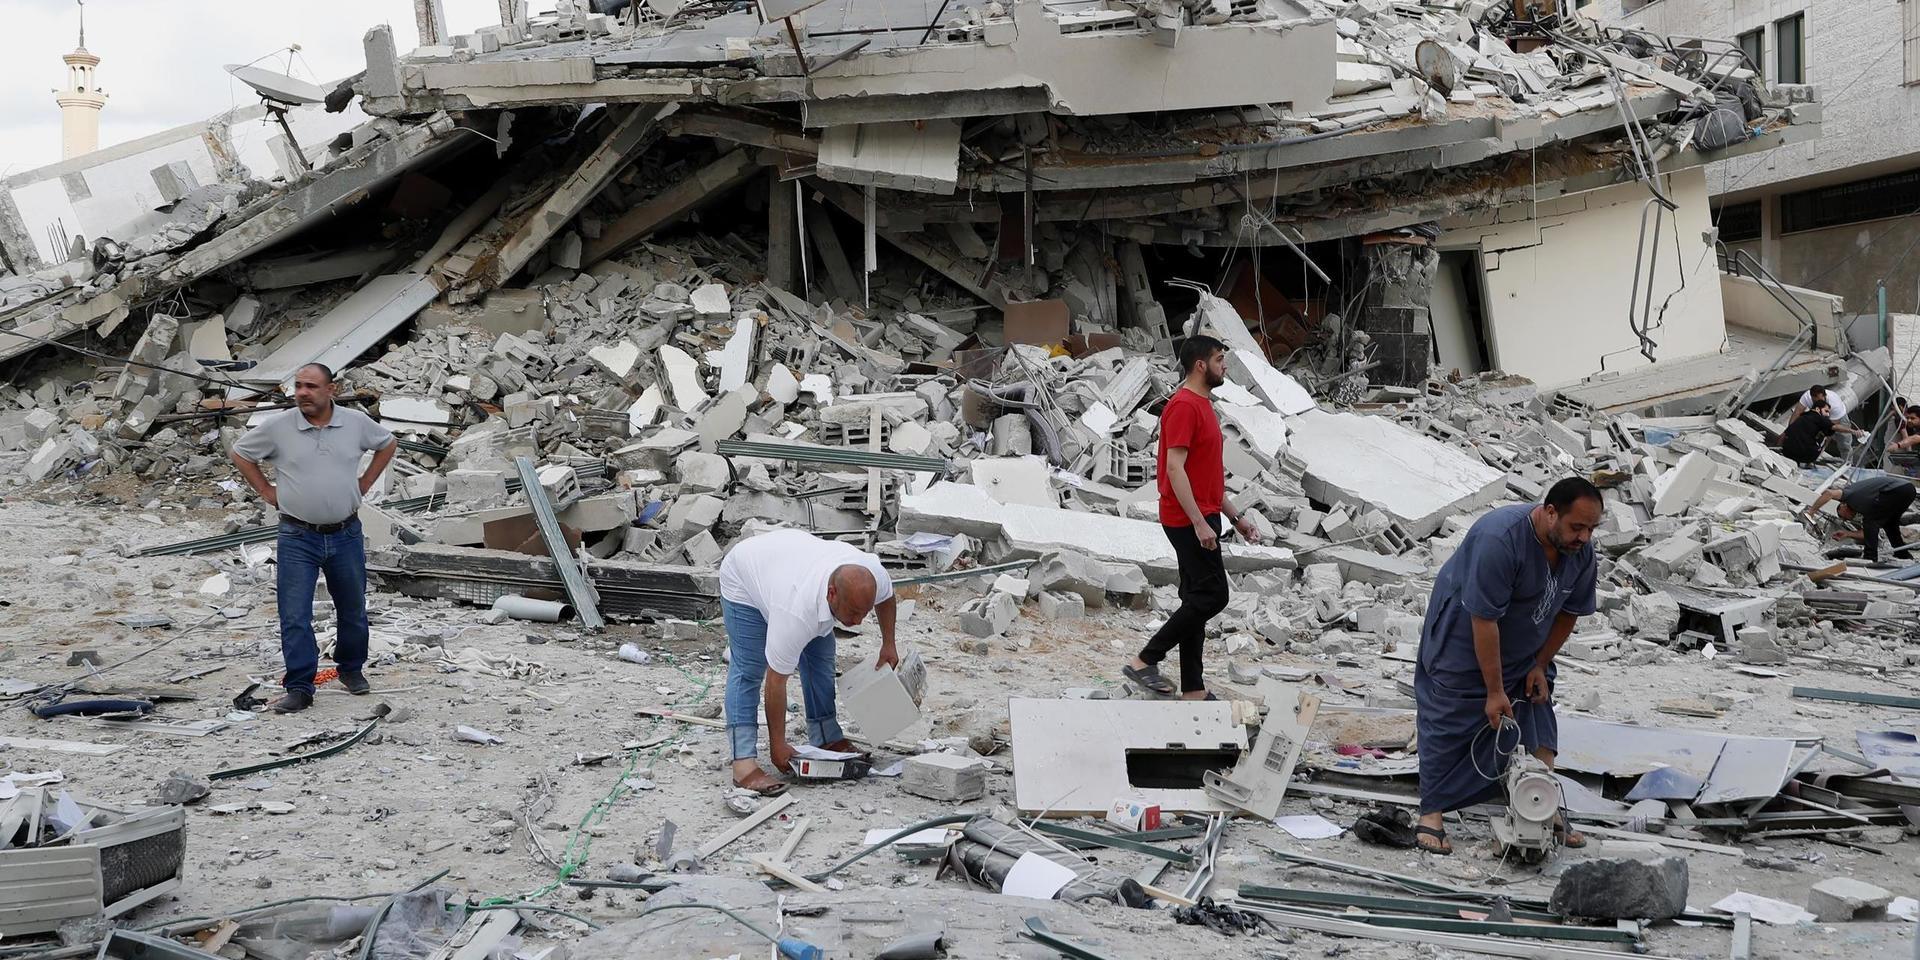 Stor förödelse efter Israels motanfall i Gazaremsan. Bild från staden Gaza i måndags.